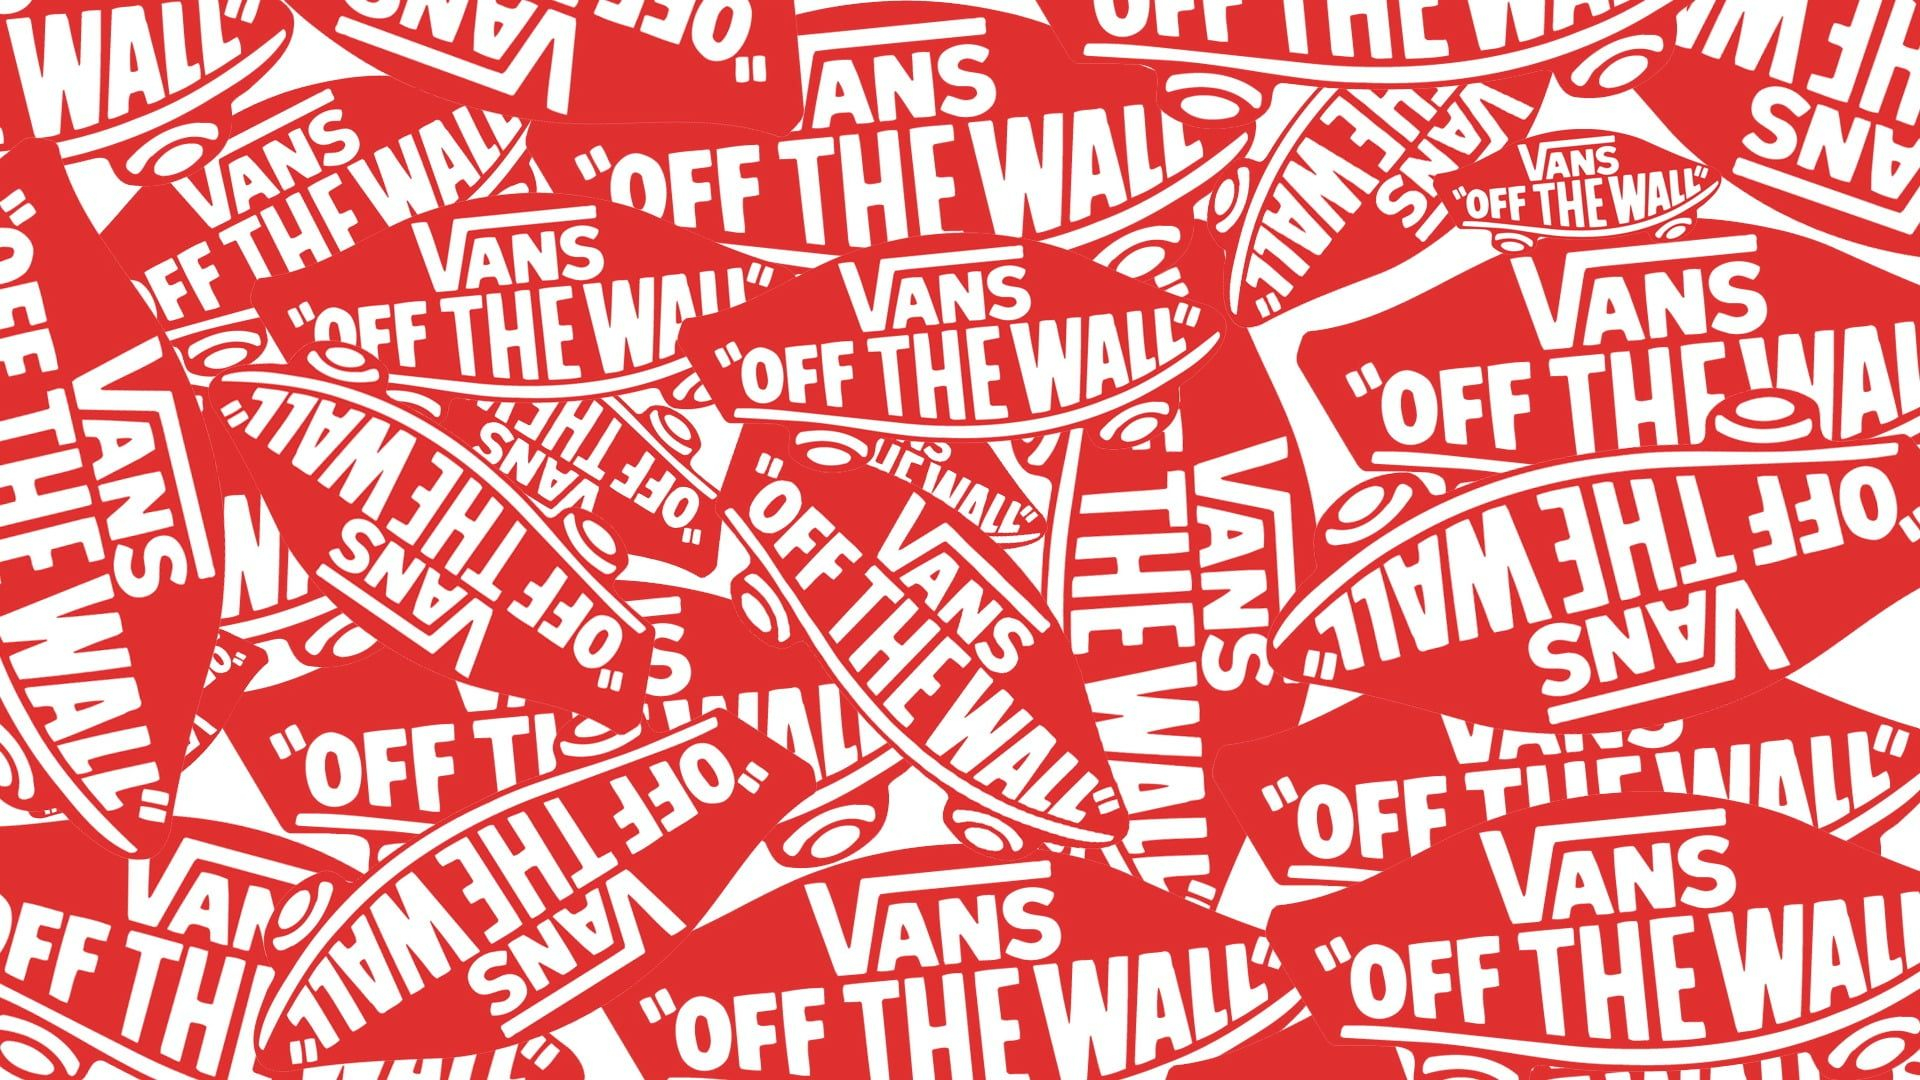 1920x1080 Vans off the wall logo #skate #Vance #vans #1080P #wallpaper #hdwallpaper #desktop | Wall logo, Vans off the wall, Logo wallpaper hd